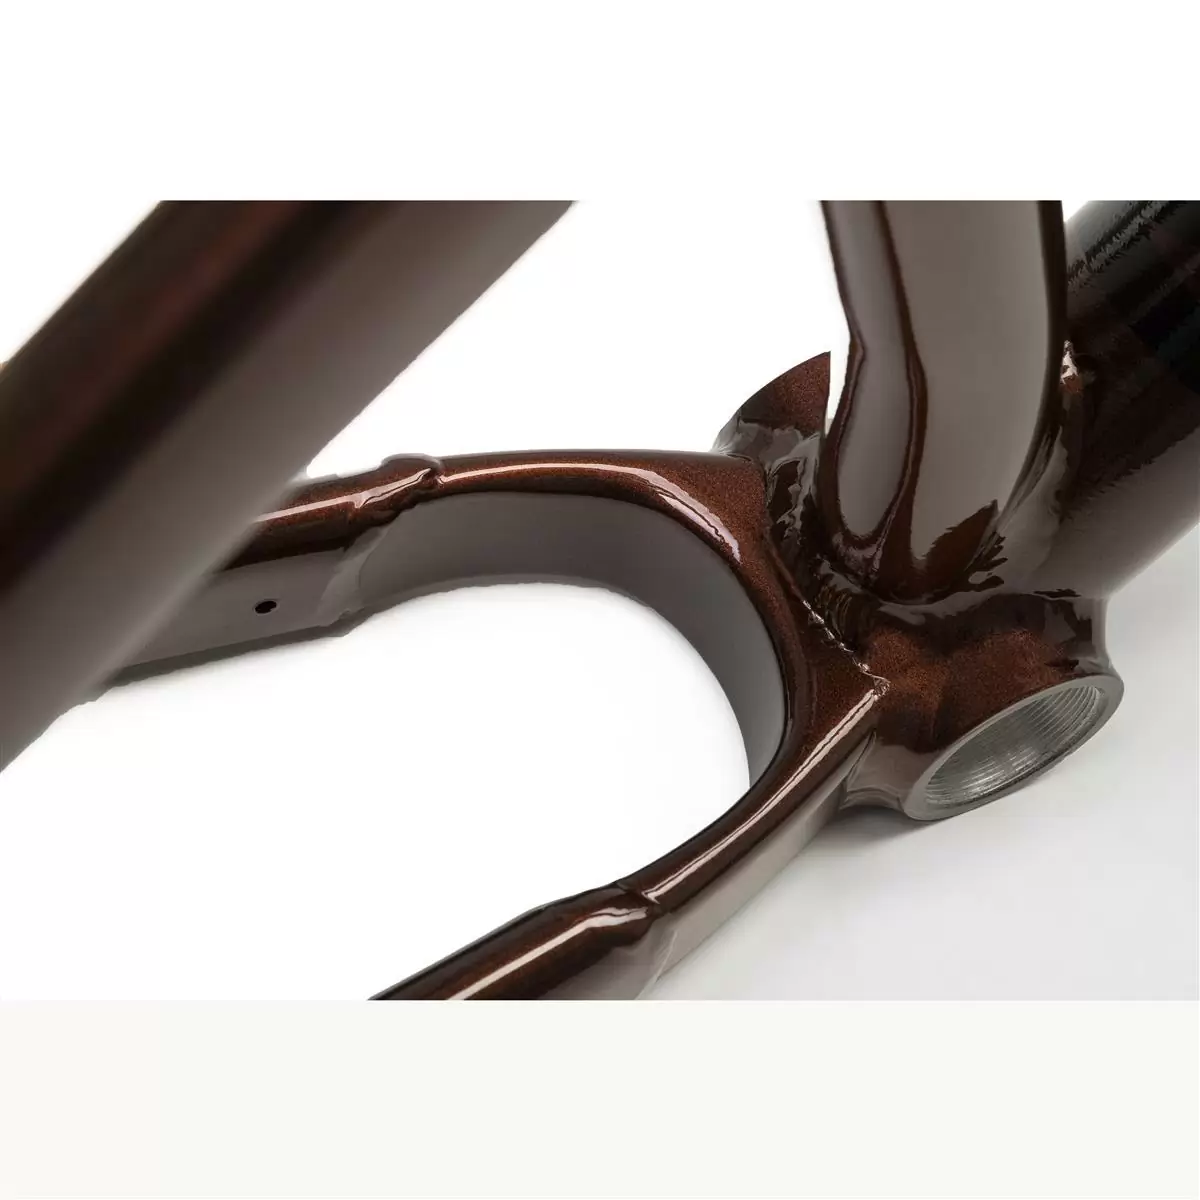 Telaio Dirt Decade V2 26'' Chocolate Taglia Unica #1